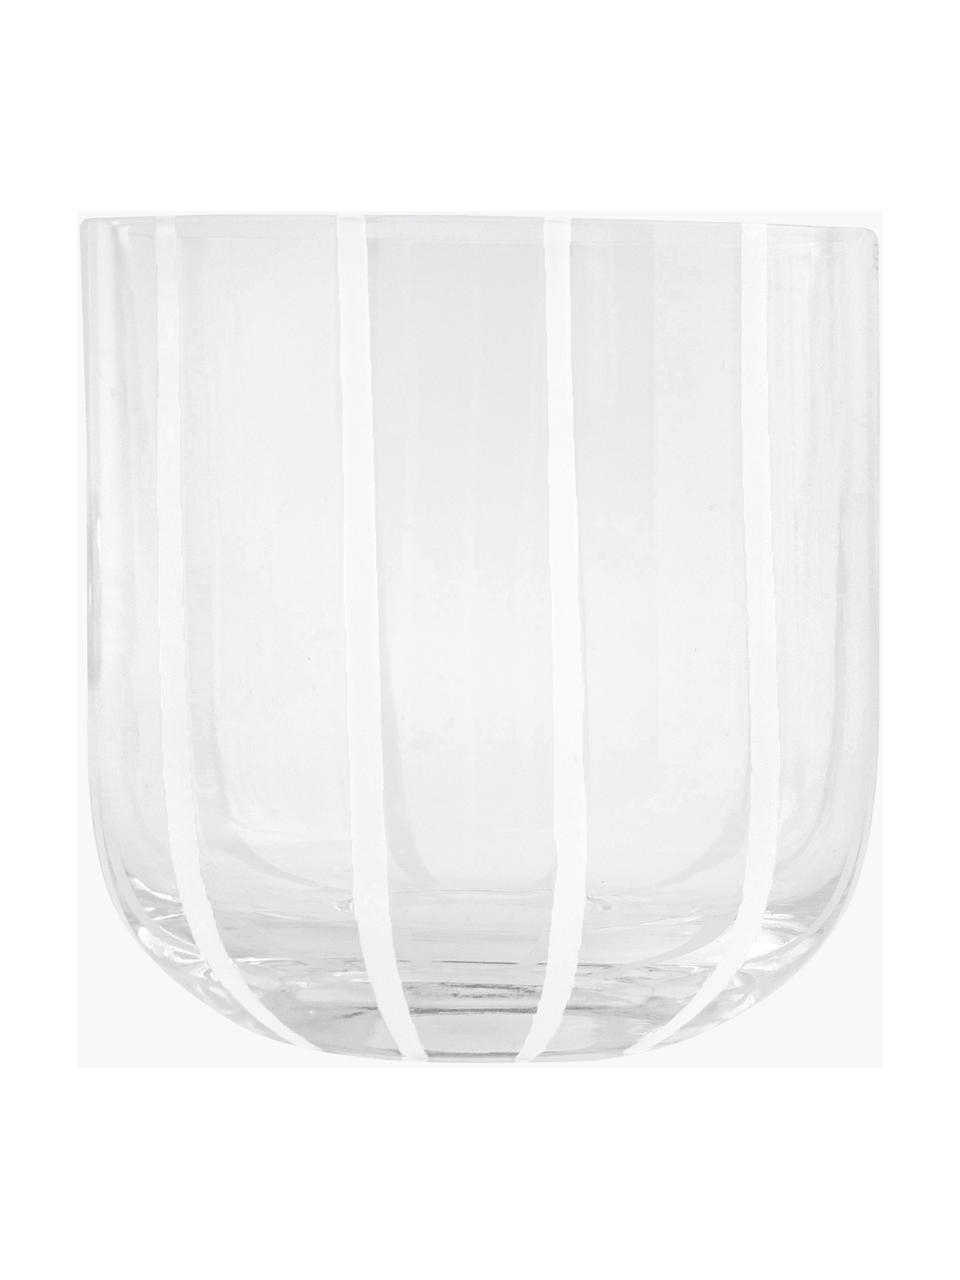 Mundgeblasene Wassergläser Mizu, 2 Stück, Glas, Transparent, Weiss, Ø 8 x H 8 cm, 320 ml